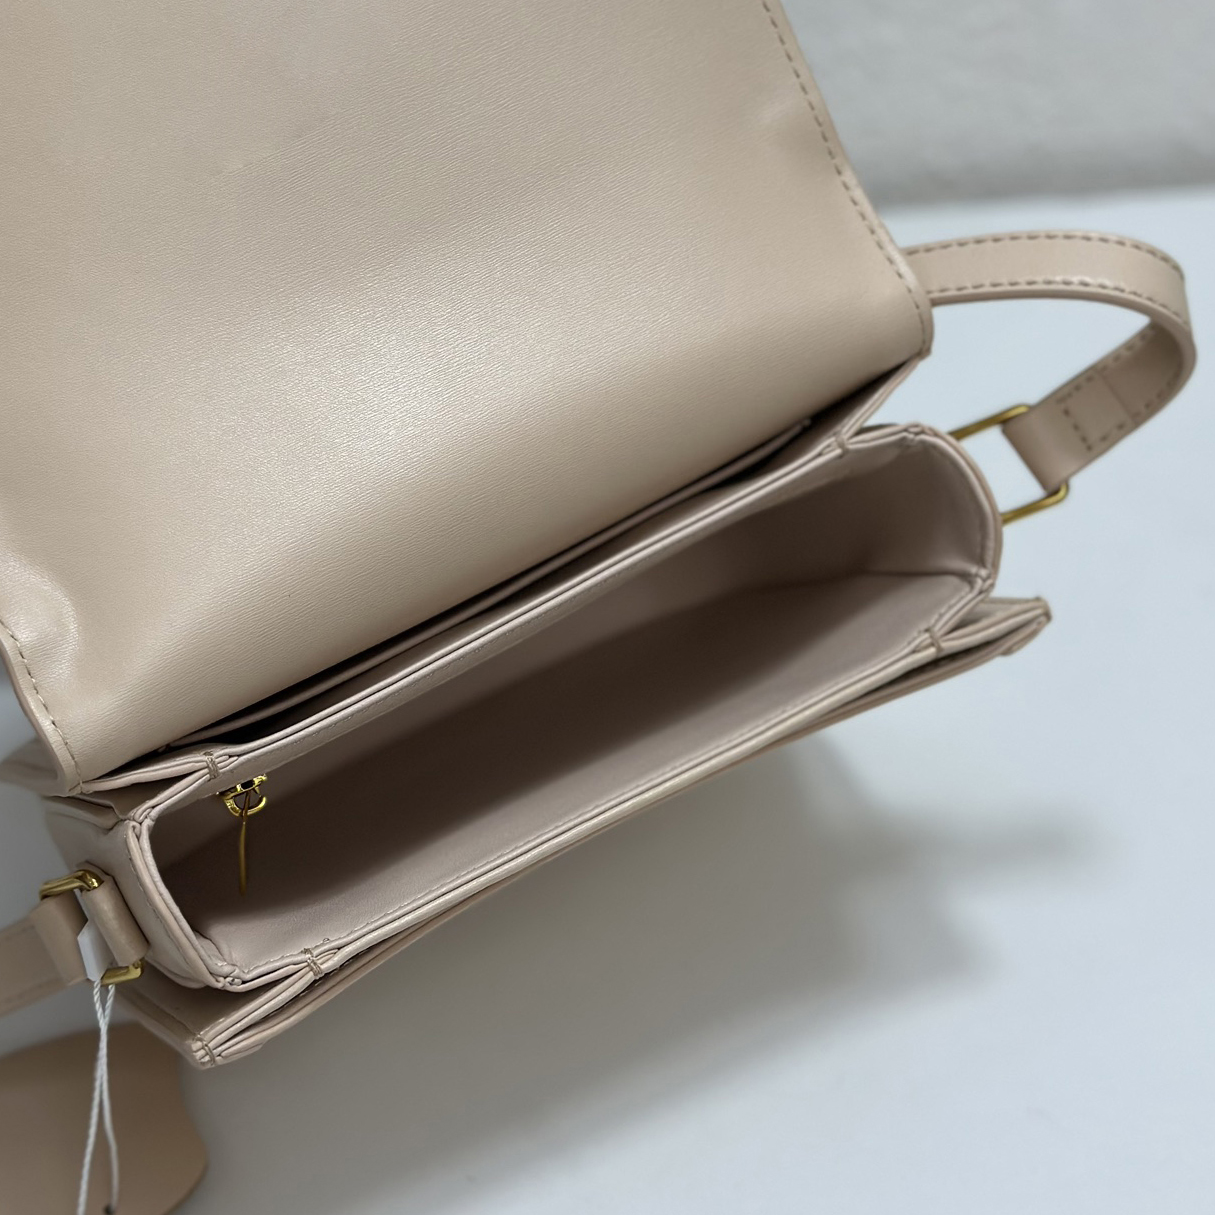 Kohud Dam Designer Hangbag crossbody-väska mode axelväska med flik brevbärare plånböcker cross body mode woc-kort handväska sadelväska